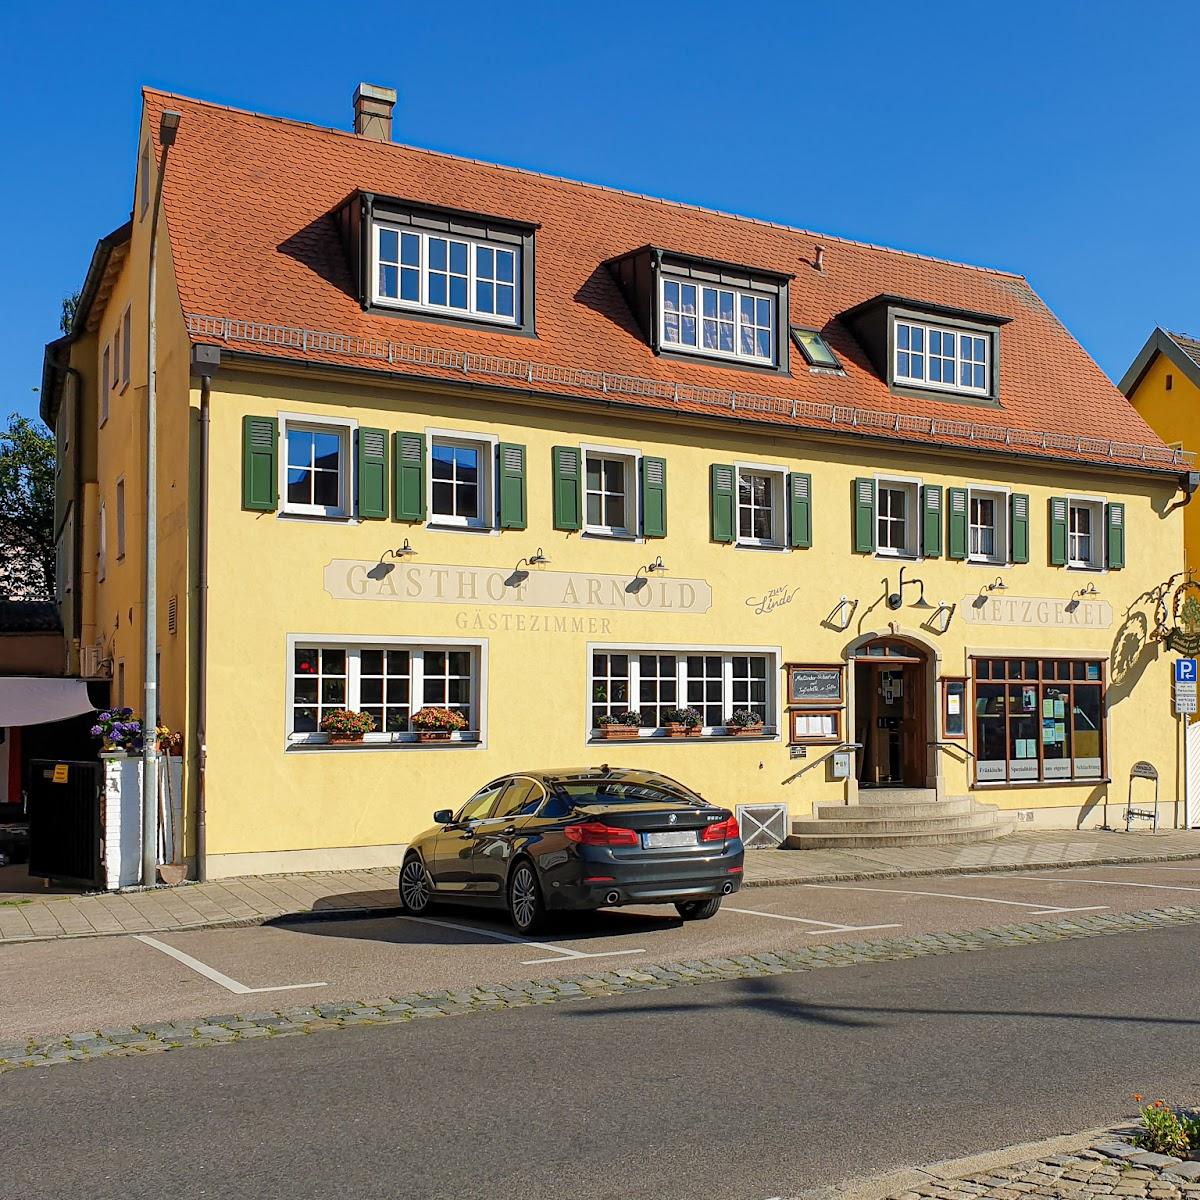 Restaurant "Gasthof Zur Linde Arnold" in Gunzenhausen